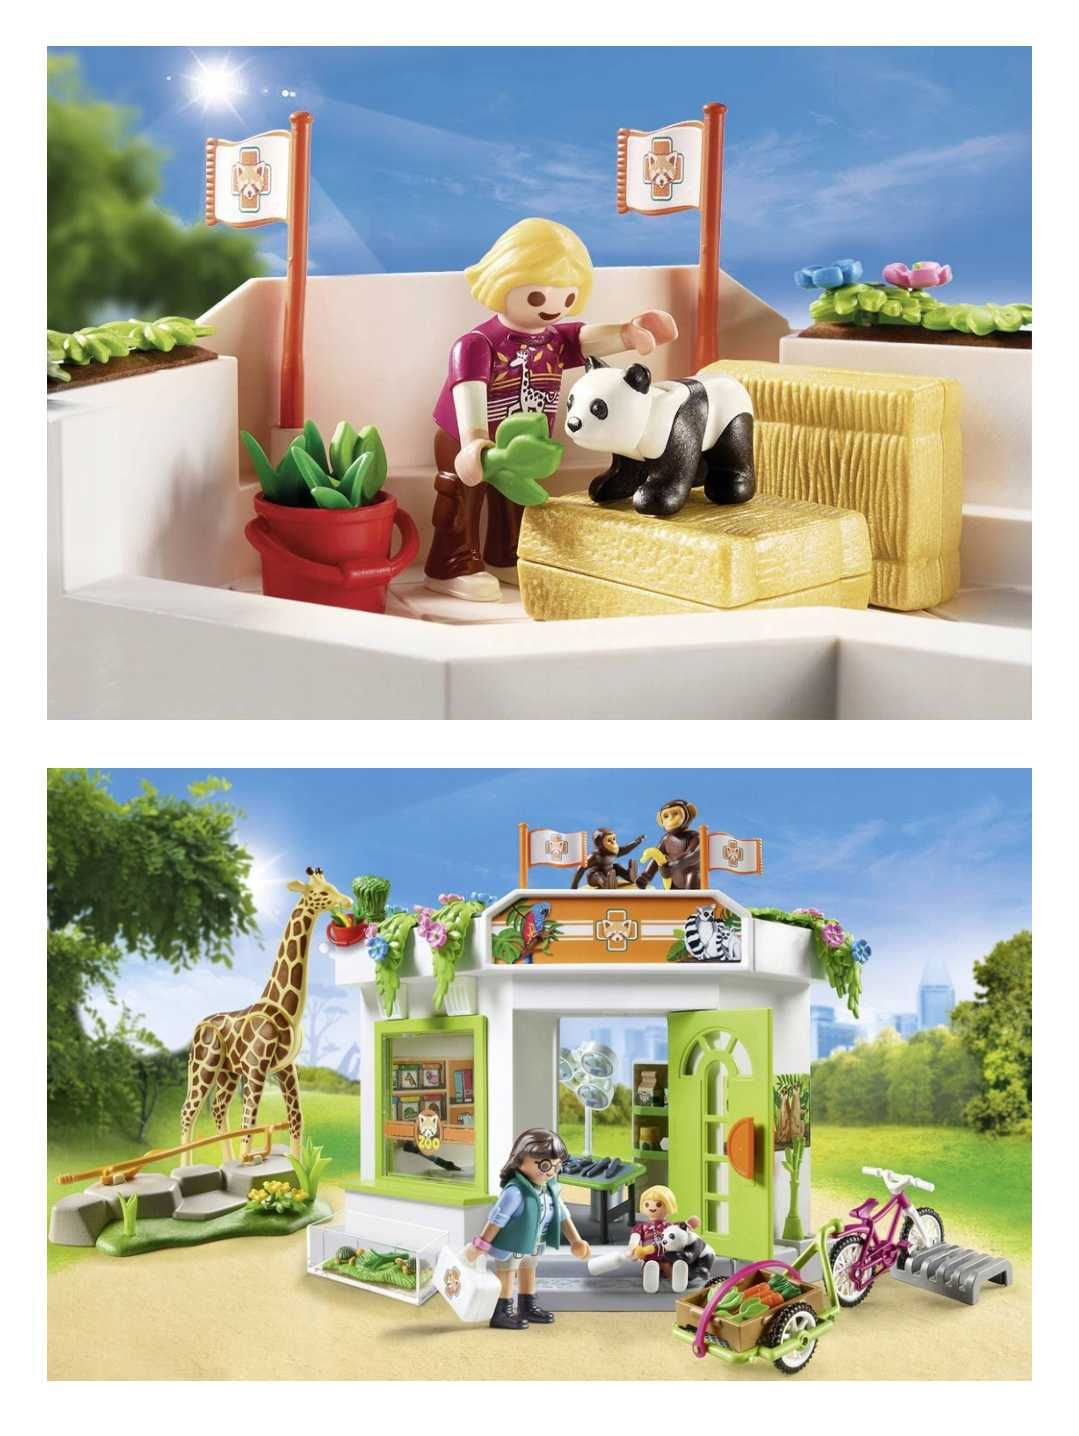 Playmobil 70900 lecznica zwierząt w zoo